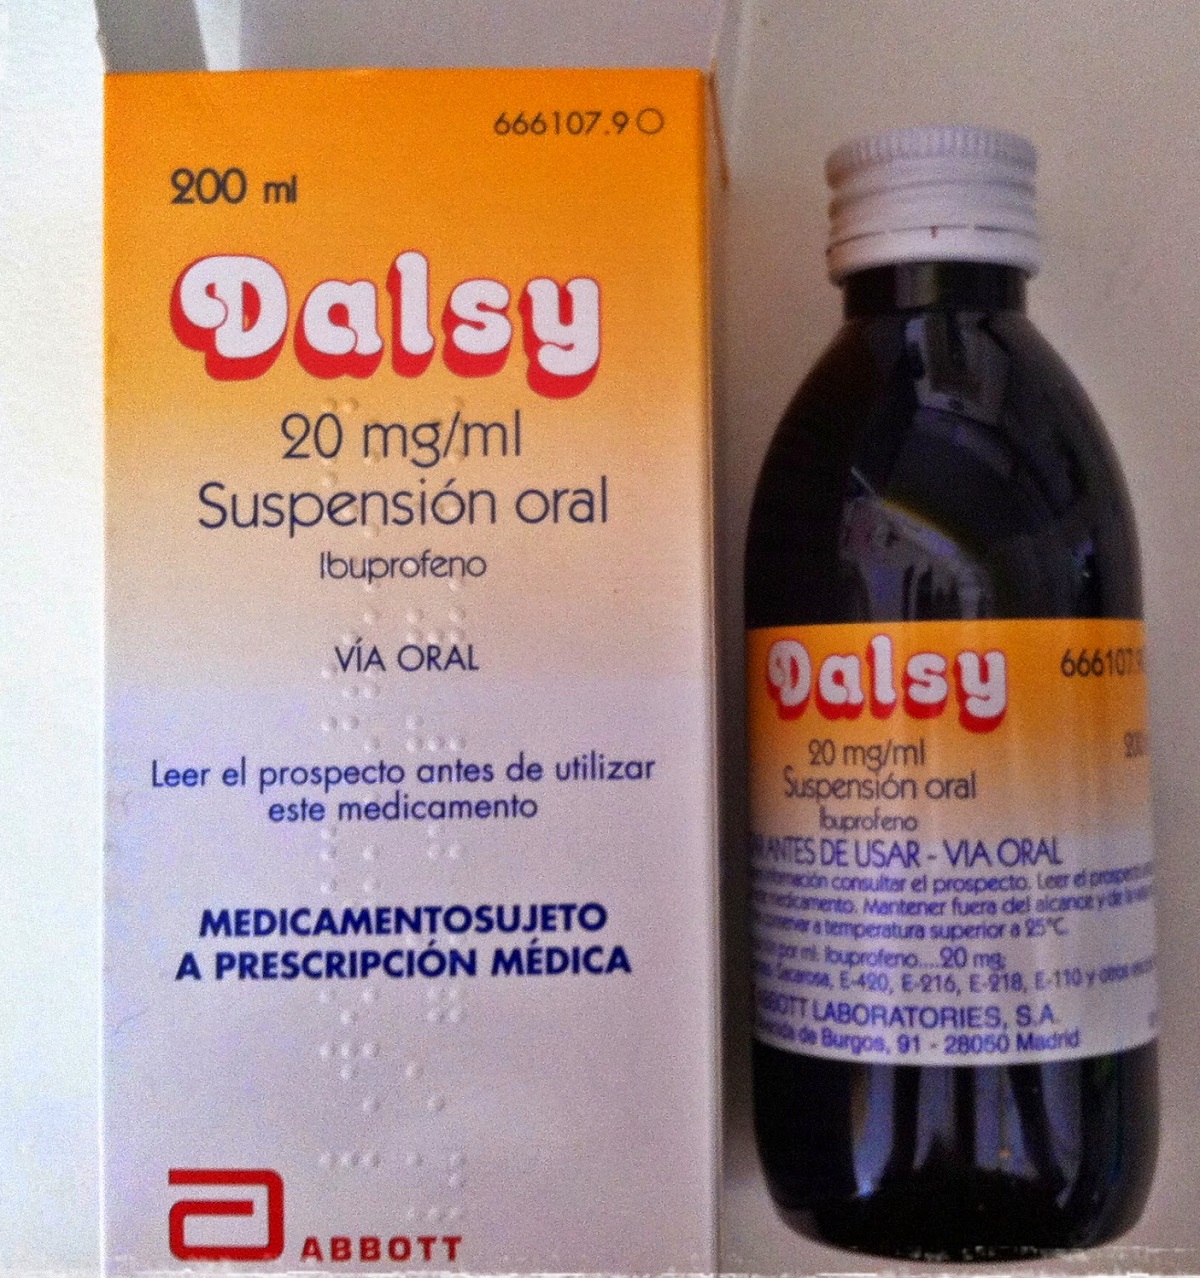 El medicamento infantil Dalsy omite efectos secundarios en su prospecto, según FACUA